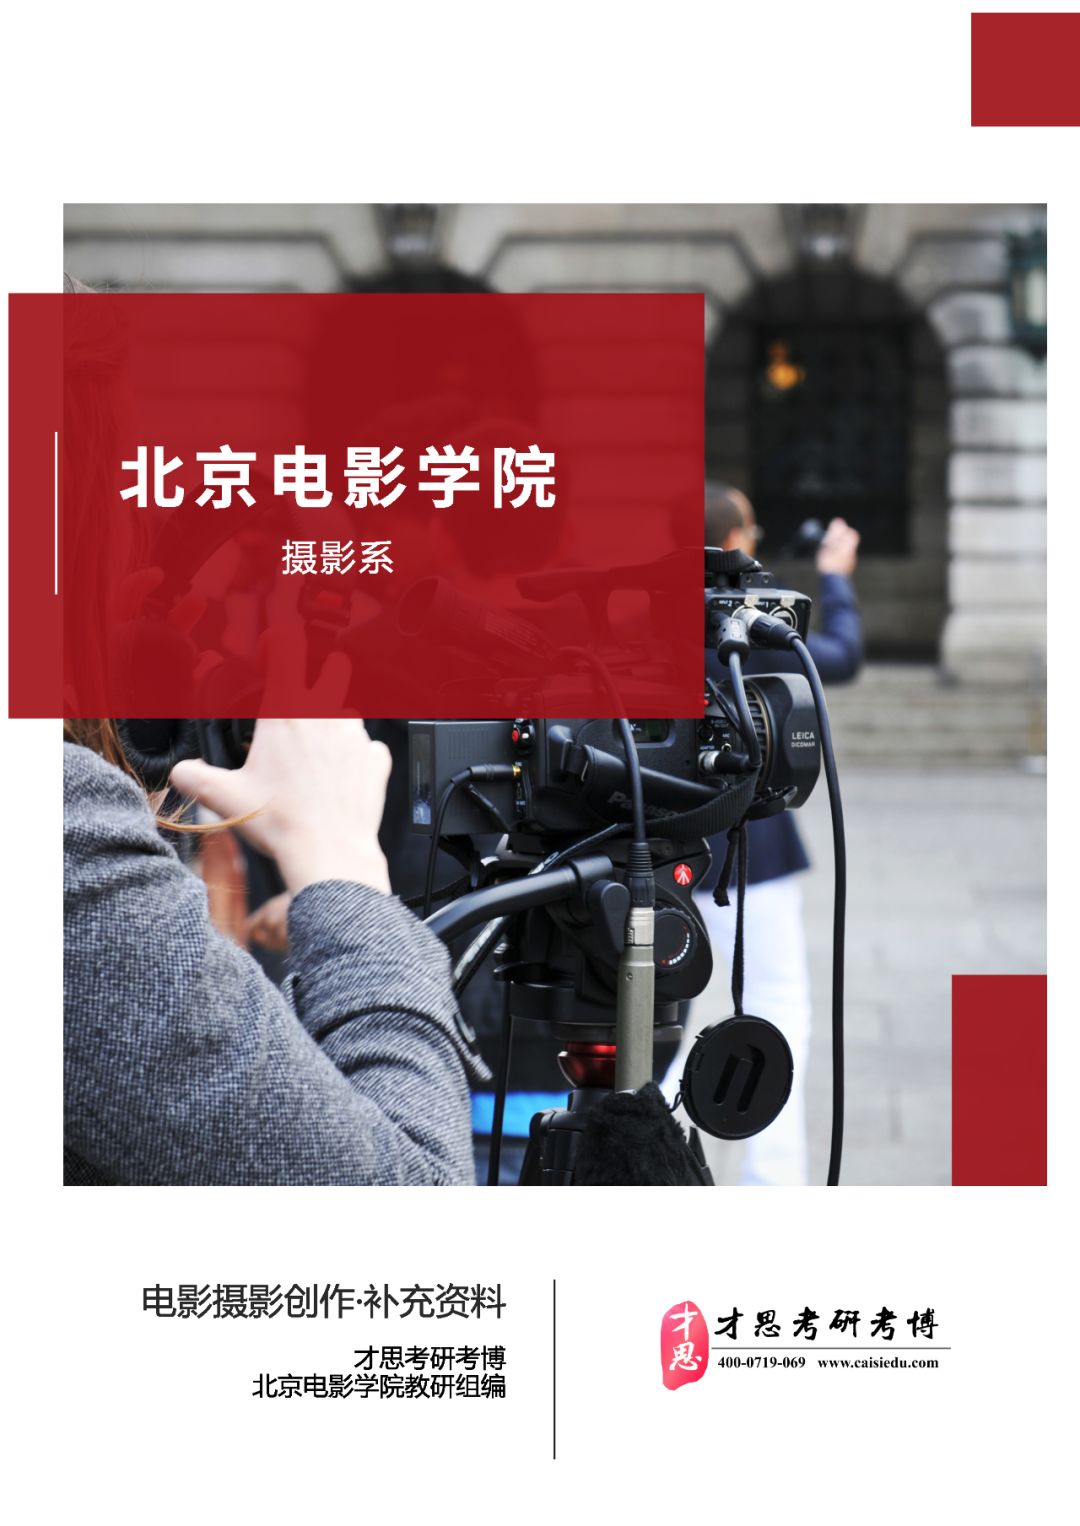 北京电影学院摄影系电影摄影与制作专硕考研难度分析